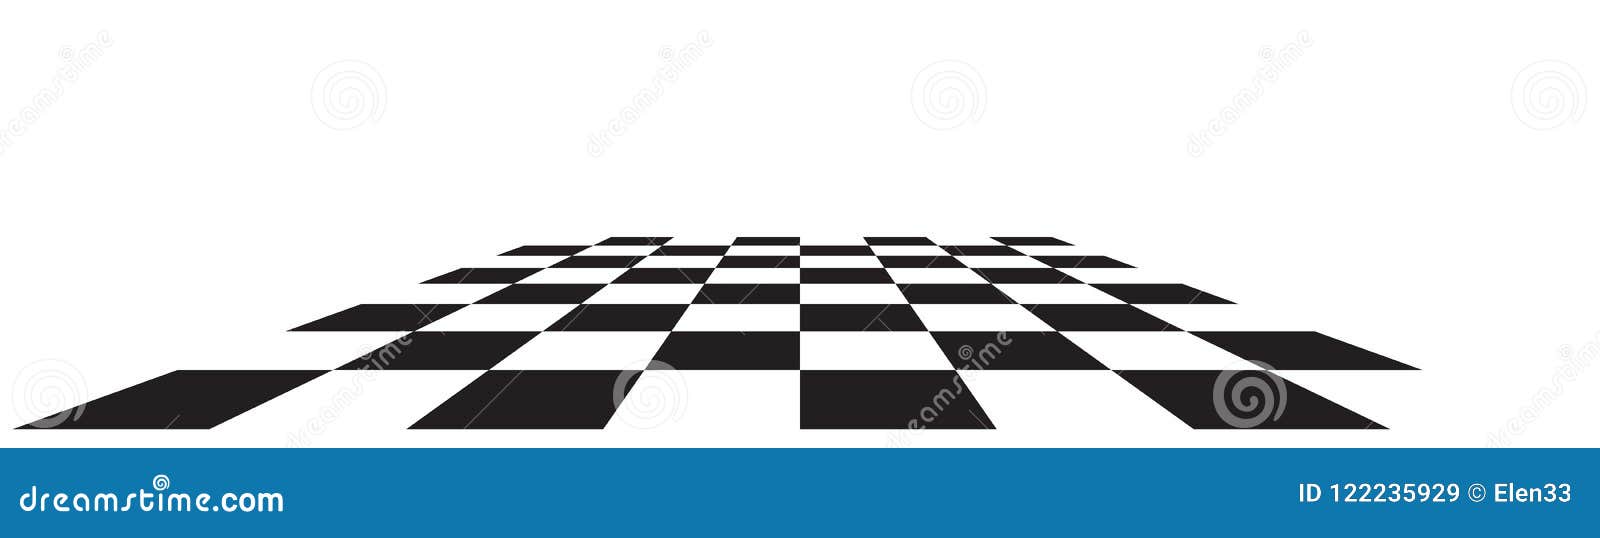 Ilustração com fundo tabuleiro de xadrez imagem vetorial de Nairi79©  71321153